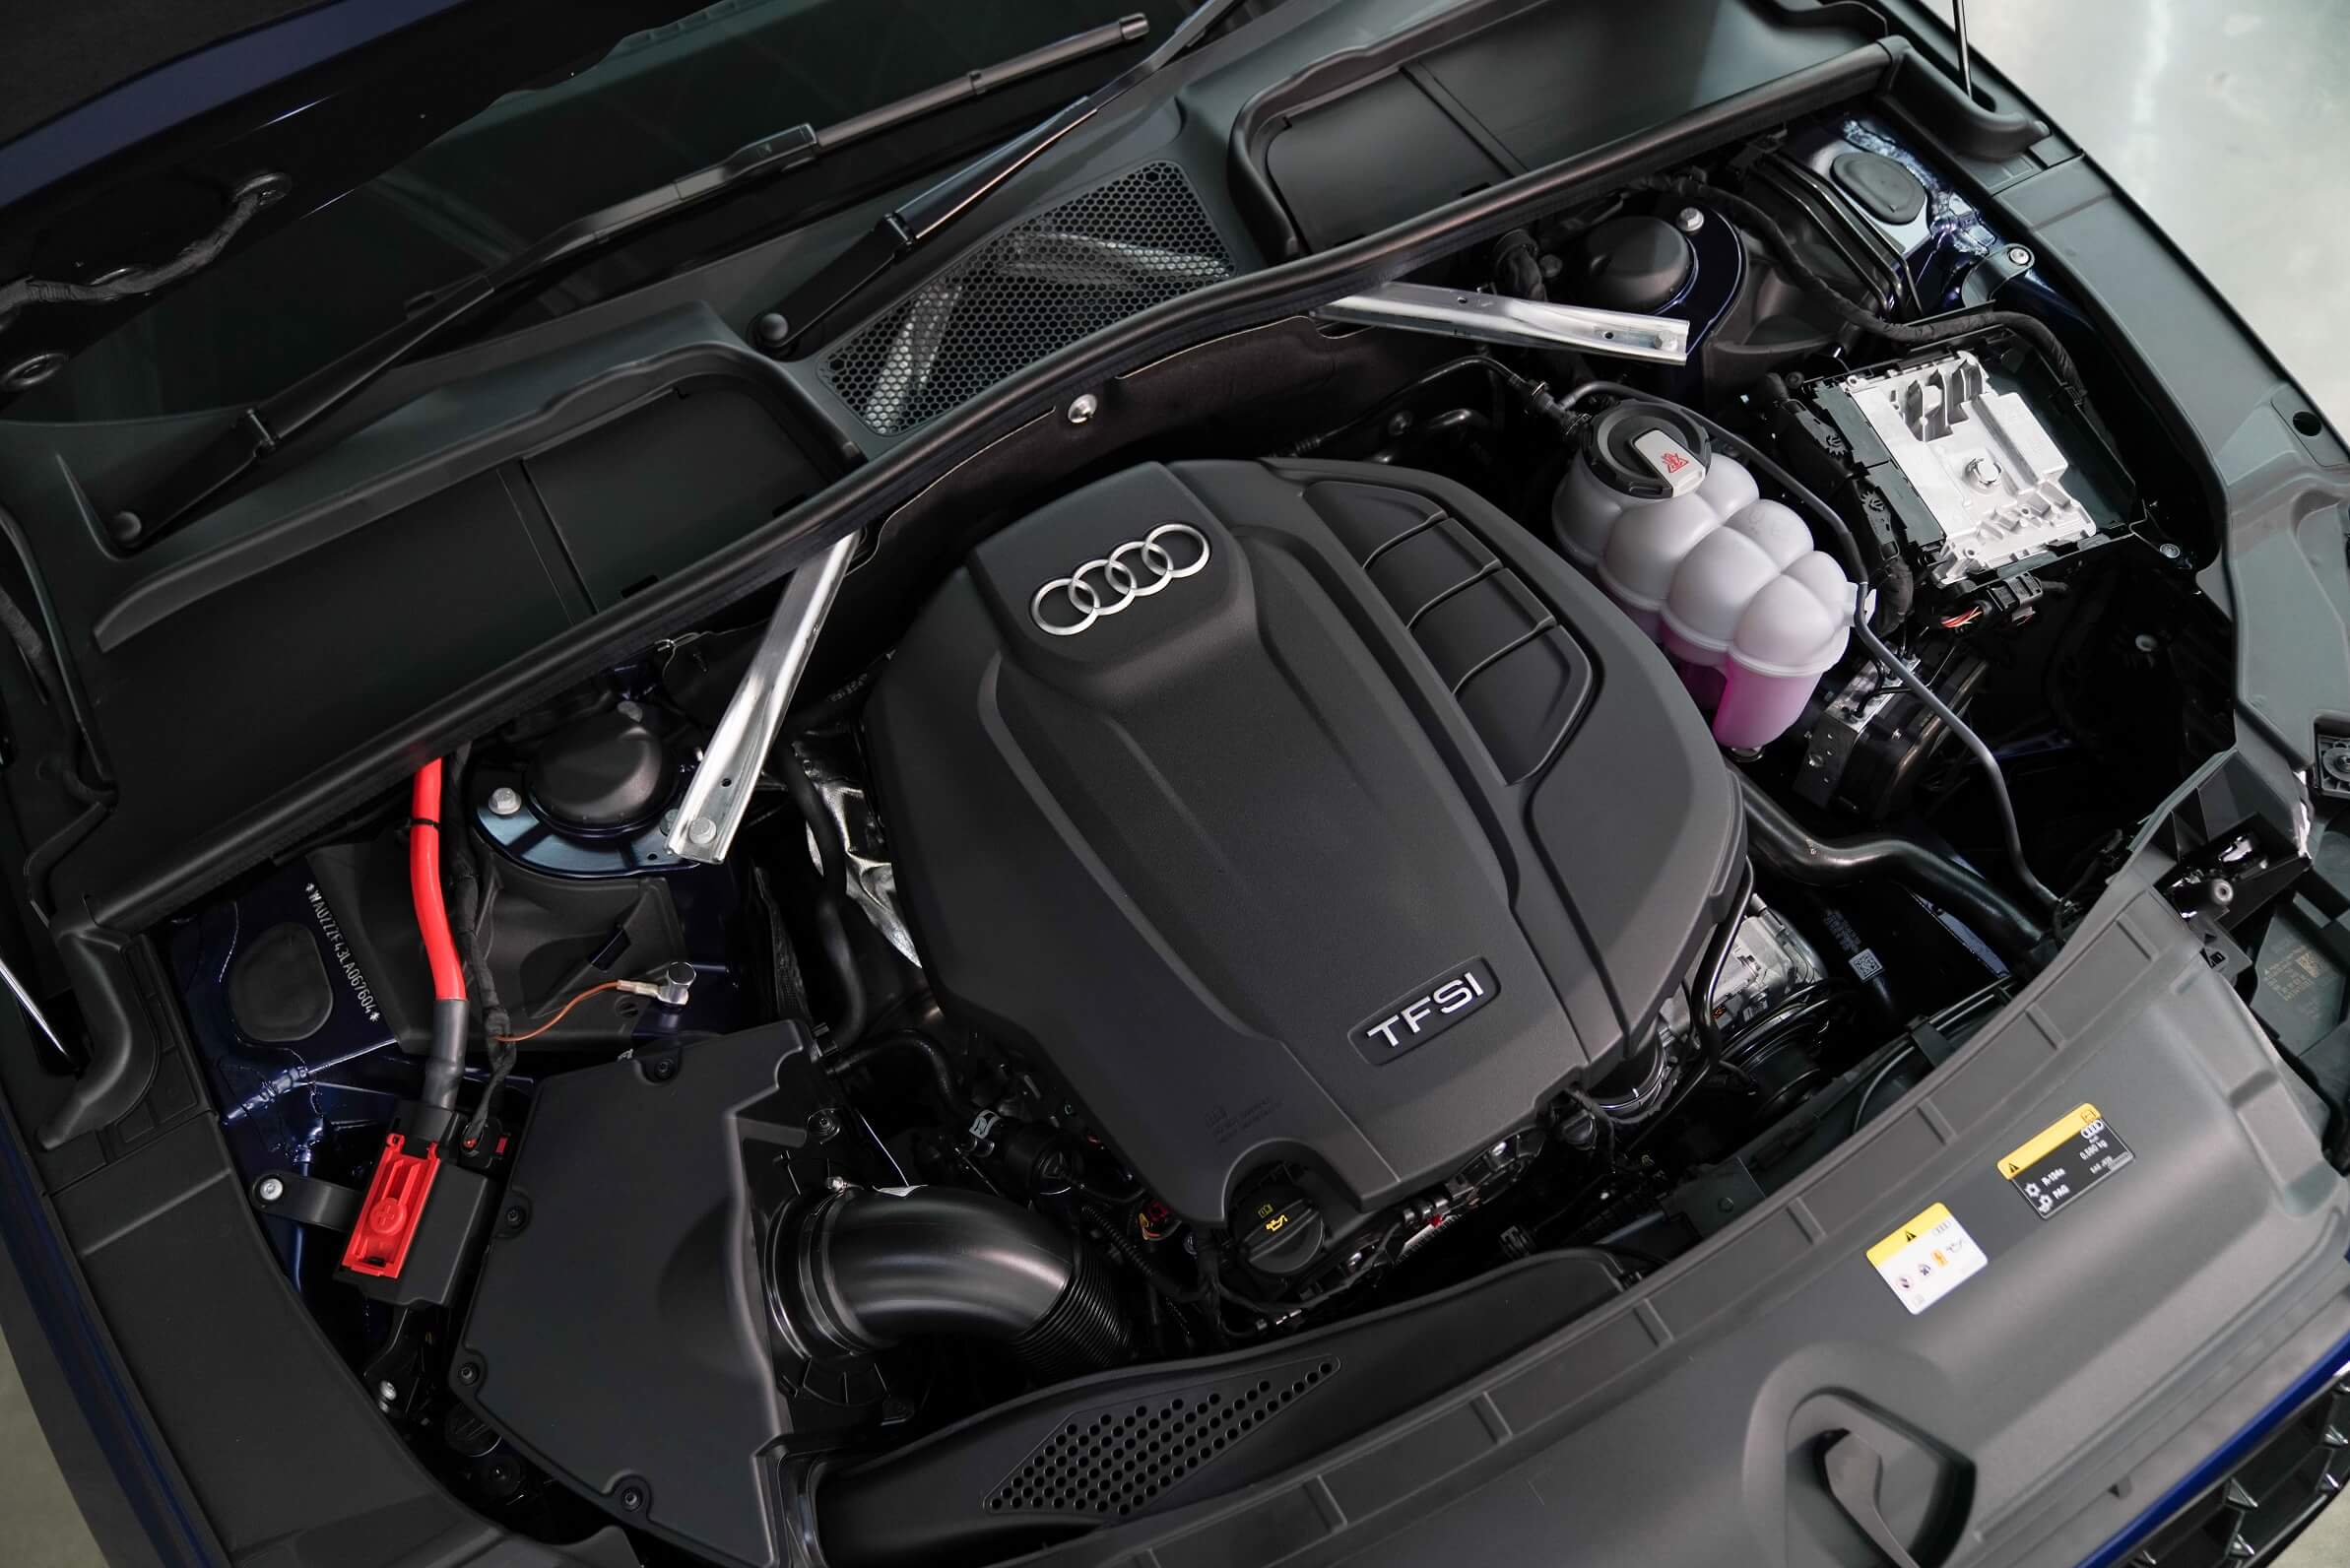 Audi Thailand รุกต่อ เรียกเสียงฮือฮาอีกครั้งกับ Audi A4 Avant รุ่นไมเนอร์เชนจ์  ครบเครื่อง สปอร์ตขึ้น ออฟชั่นเพียบ พร้อมส่งมอบรถทันที